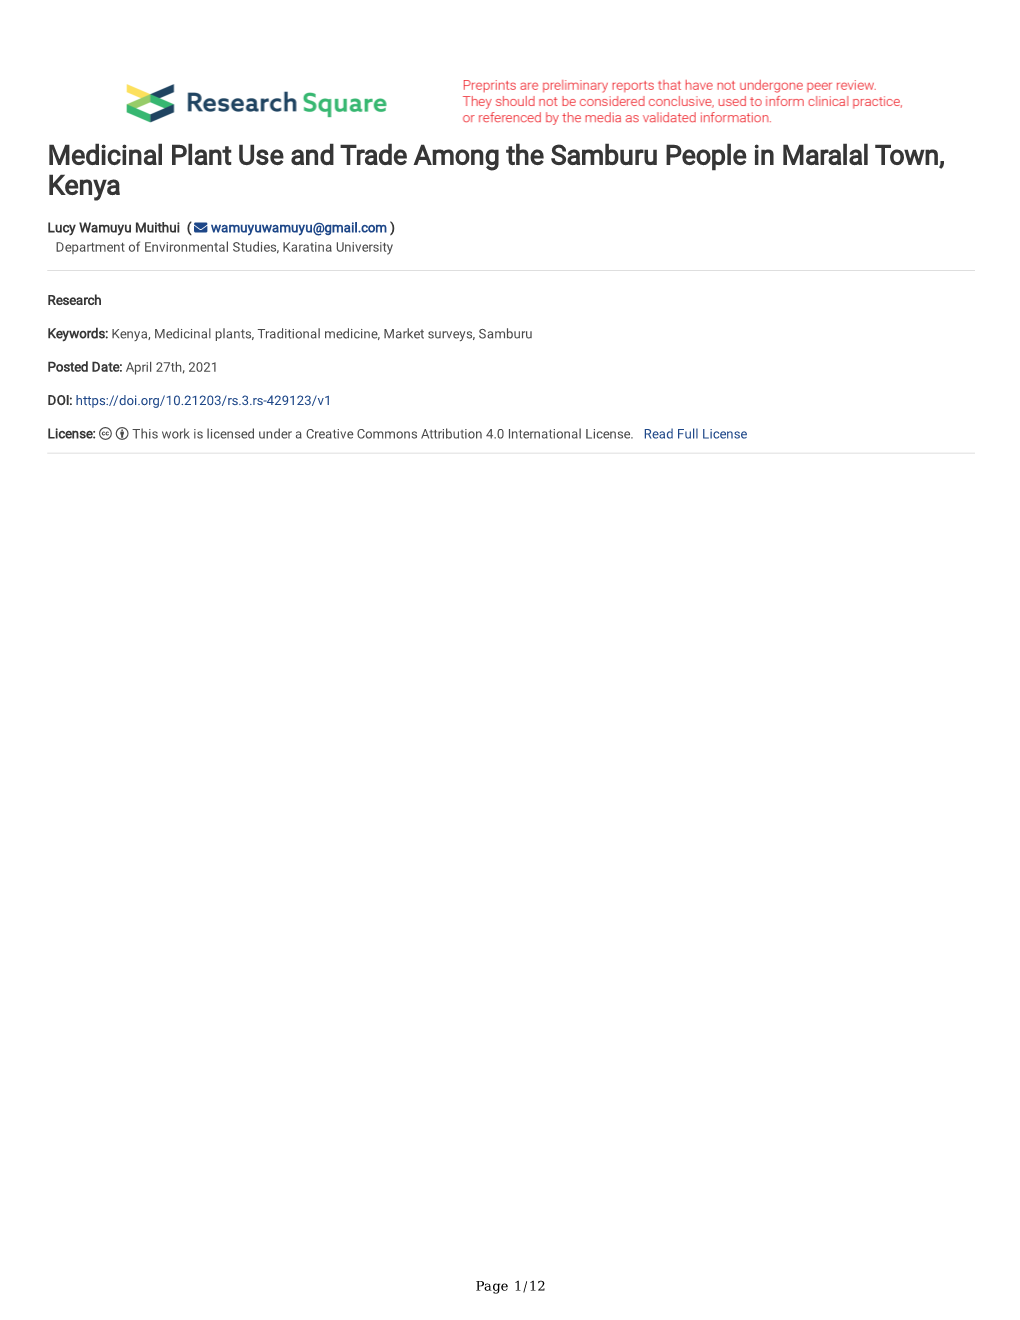 Medicinal Plant Use and Trade Among the Samburu People in Maralal Town, Kenya